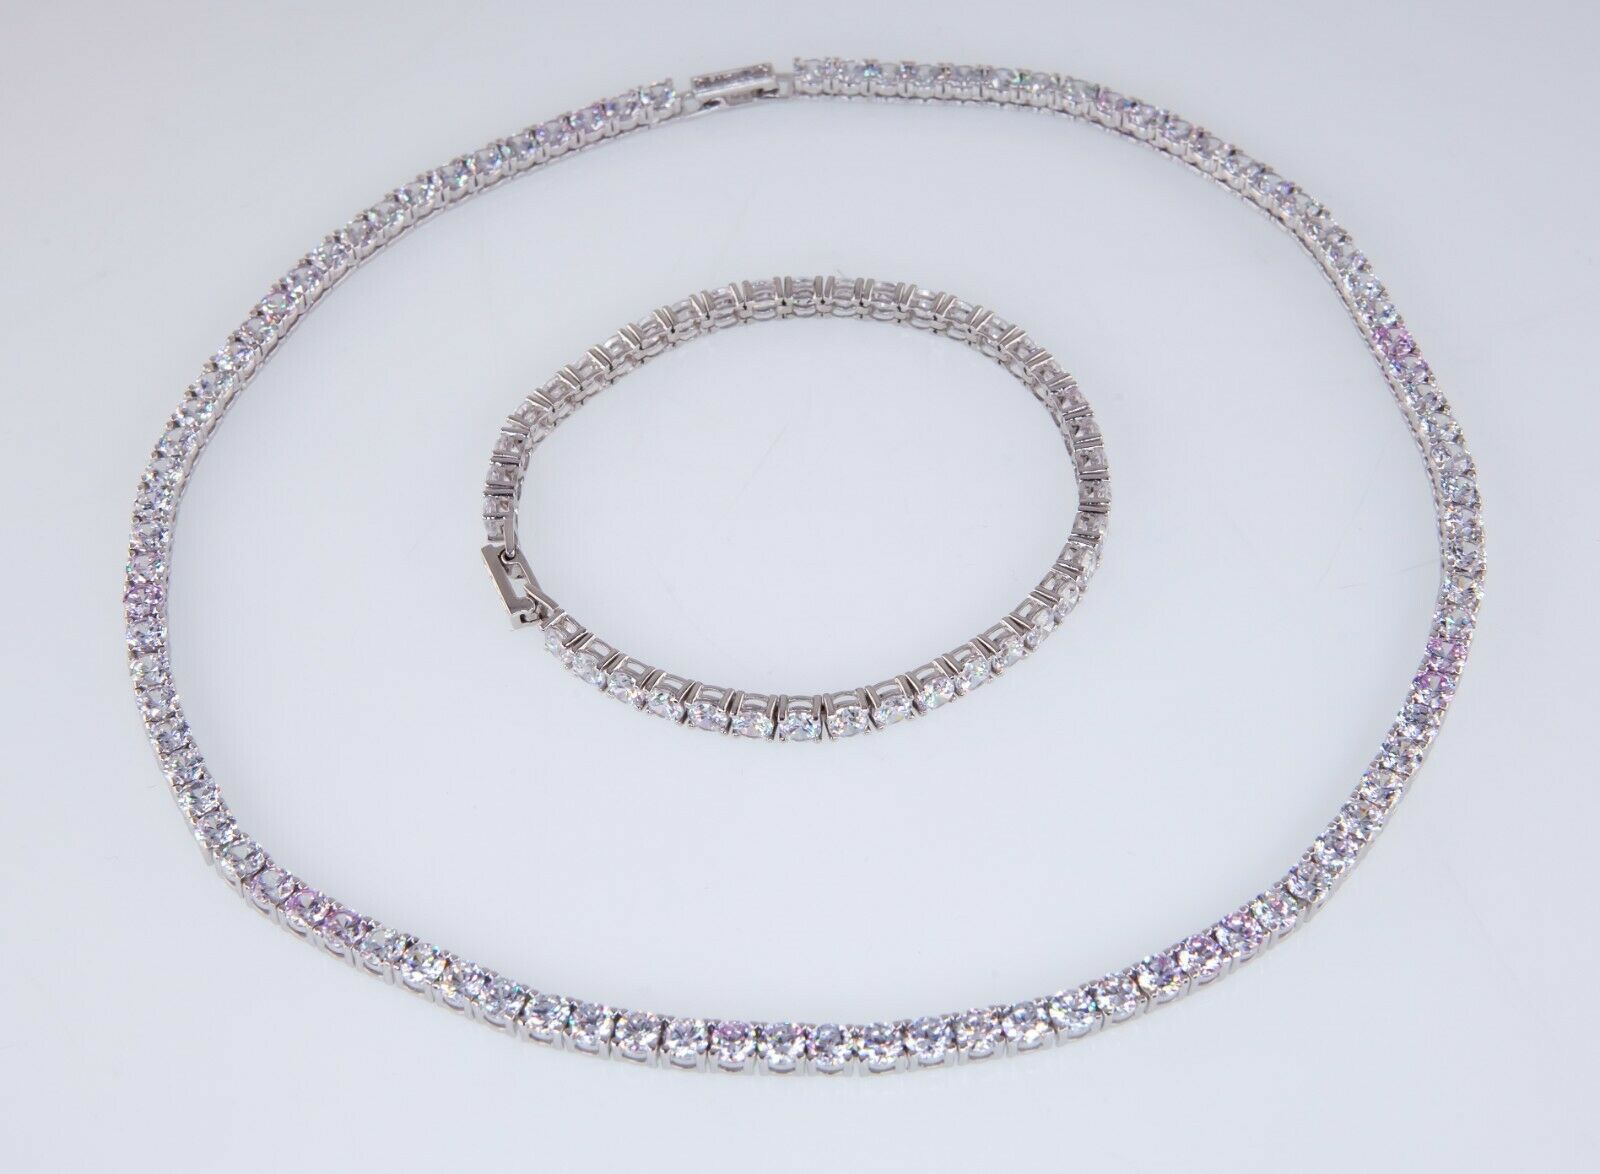 Stunning Channel Set Rhinestone Necklace & Bracelet Set - j121223 |  Eclectic Vintage